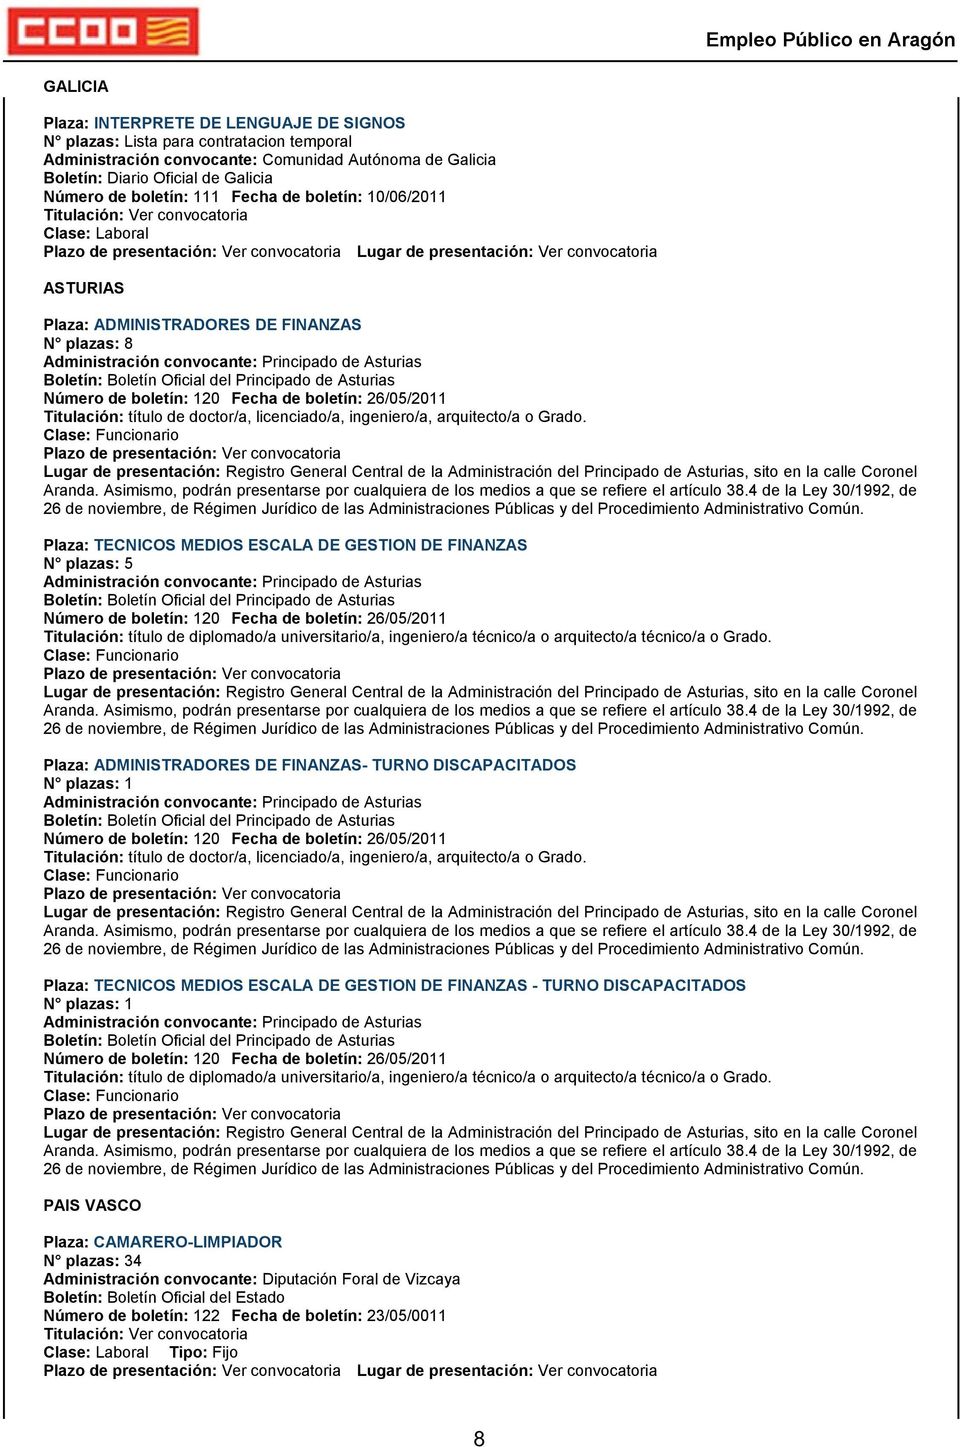 Principado de Asturias Número de boletín: 120 Fecha de boletín: 26/05/2011 Titulación: título de doctor/a, licenciado/a, ingeniero/a, arquitecto/a o Grado.